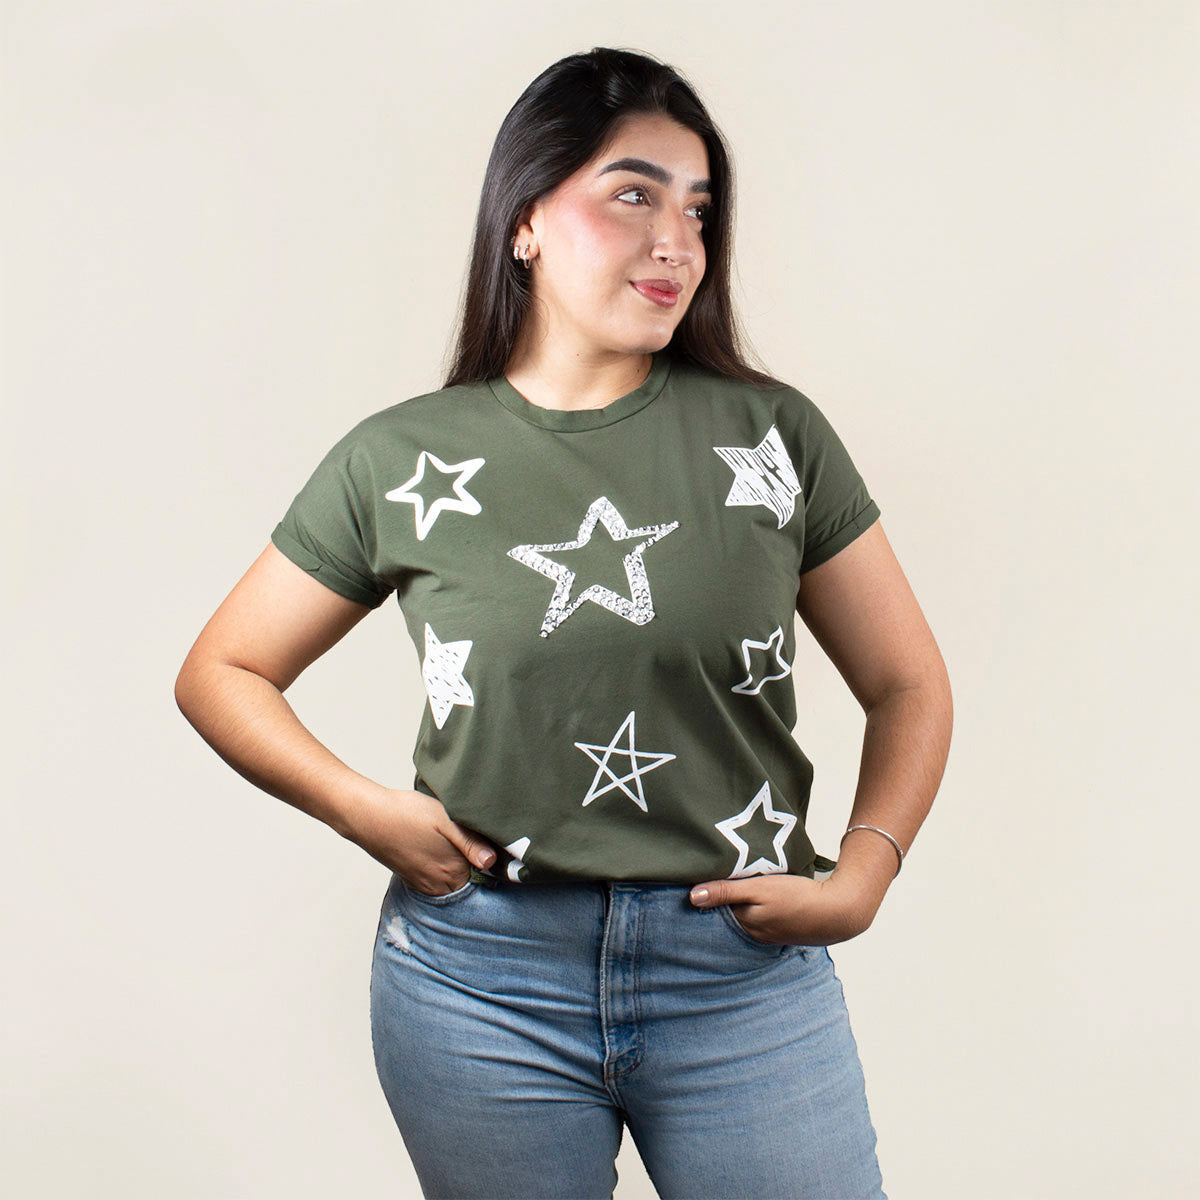 Camiseta básica color verde militar con estampado de estrellas